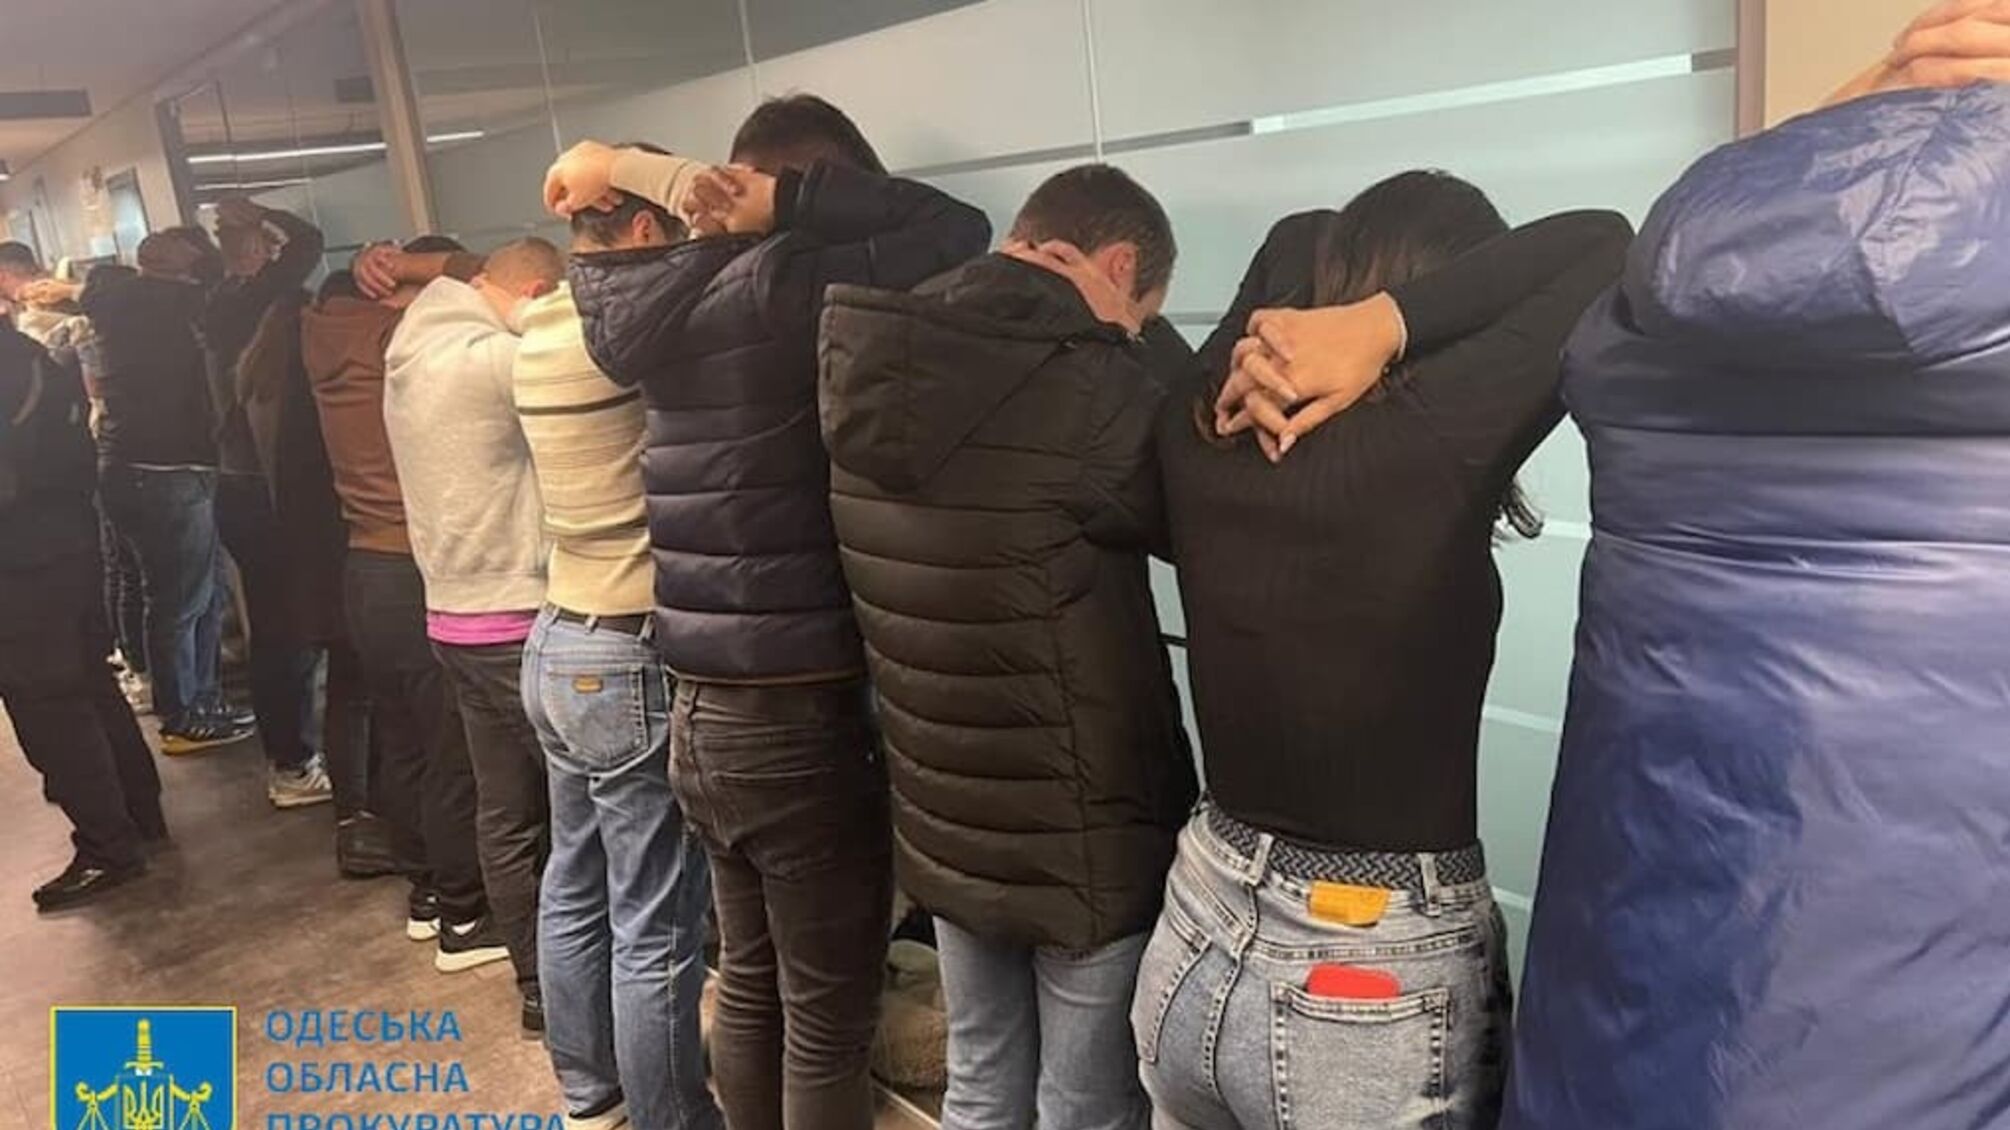 Учали 'грамотно разводить' иностранцев: в Одессе нелегальный накрыли колл-центр